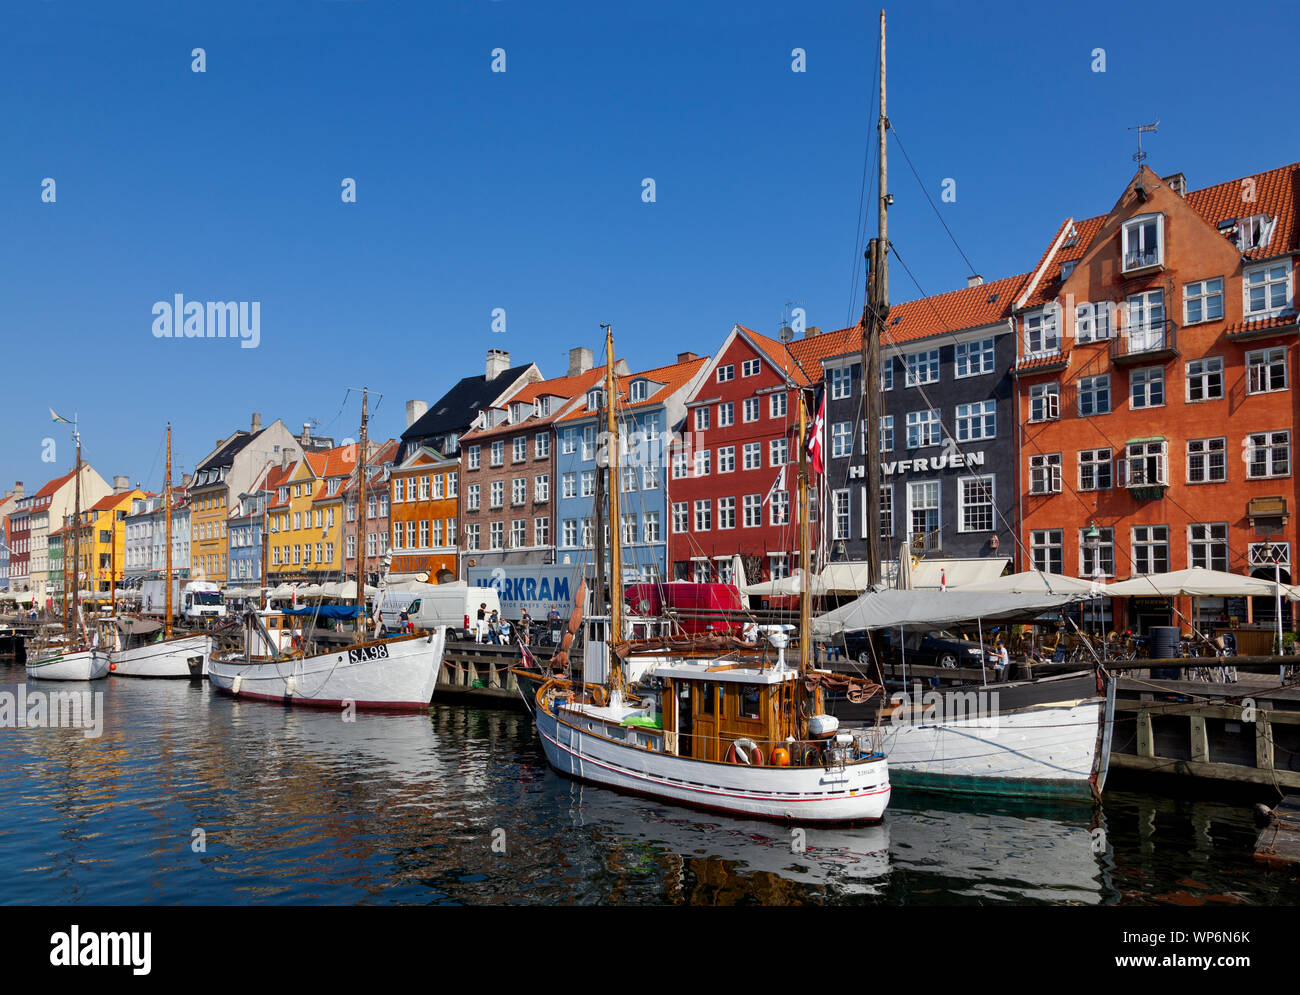 Schöne alte Schiffe und Schiffe in der populären Nyhavn-kanal. Bunte Häuser. Restaurants und Bars mit Touristen und Besuchern überfüllt. Stockfoto